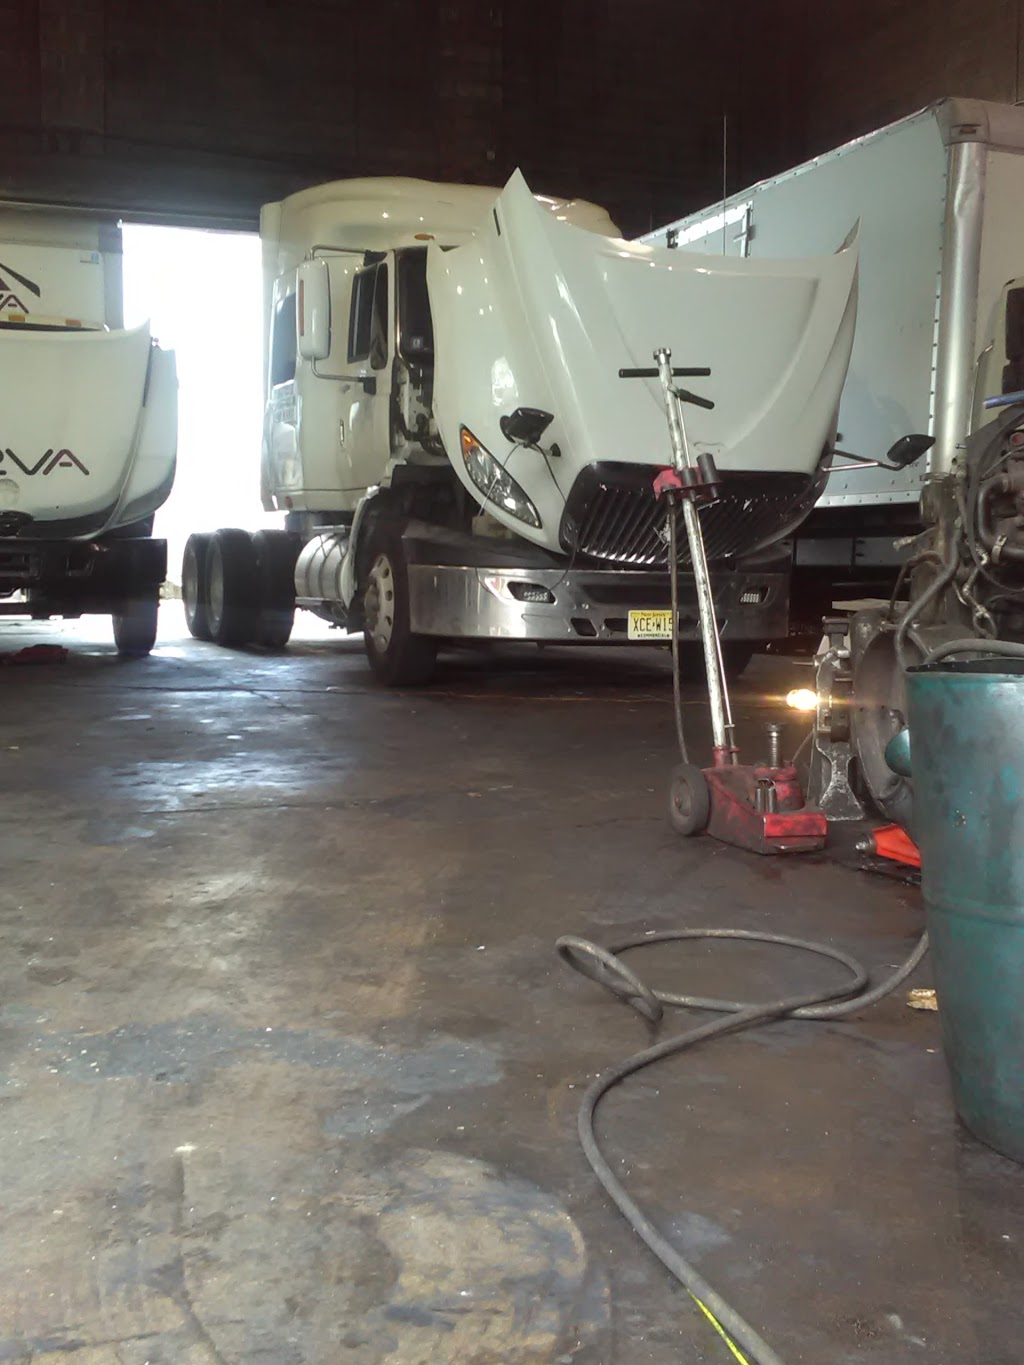 Santana Truck Repair | 850 Frelinghuysen Ave unit d, Newark, NJ 07114 | Phone: (973) 643-1744